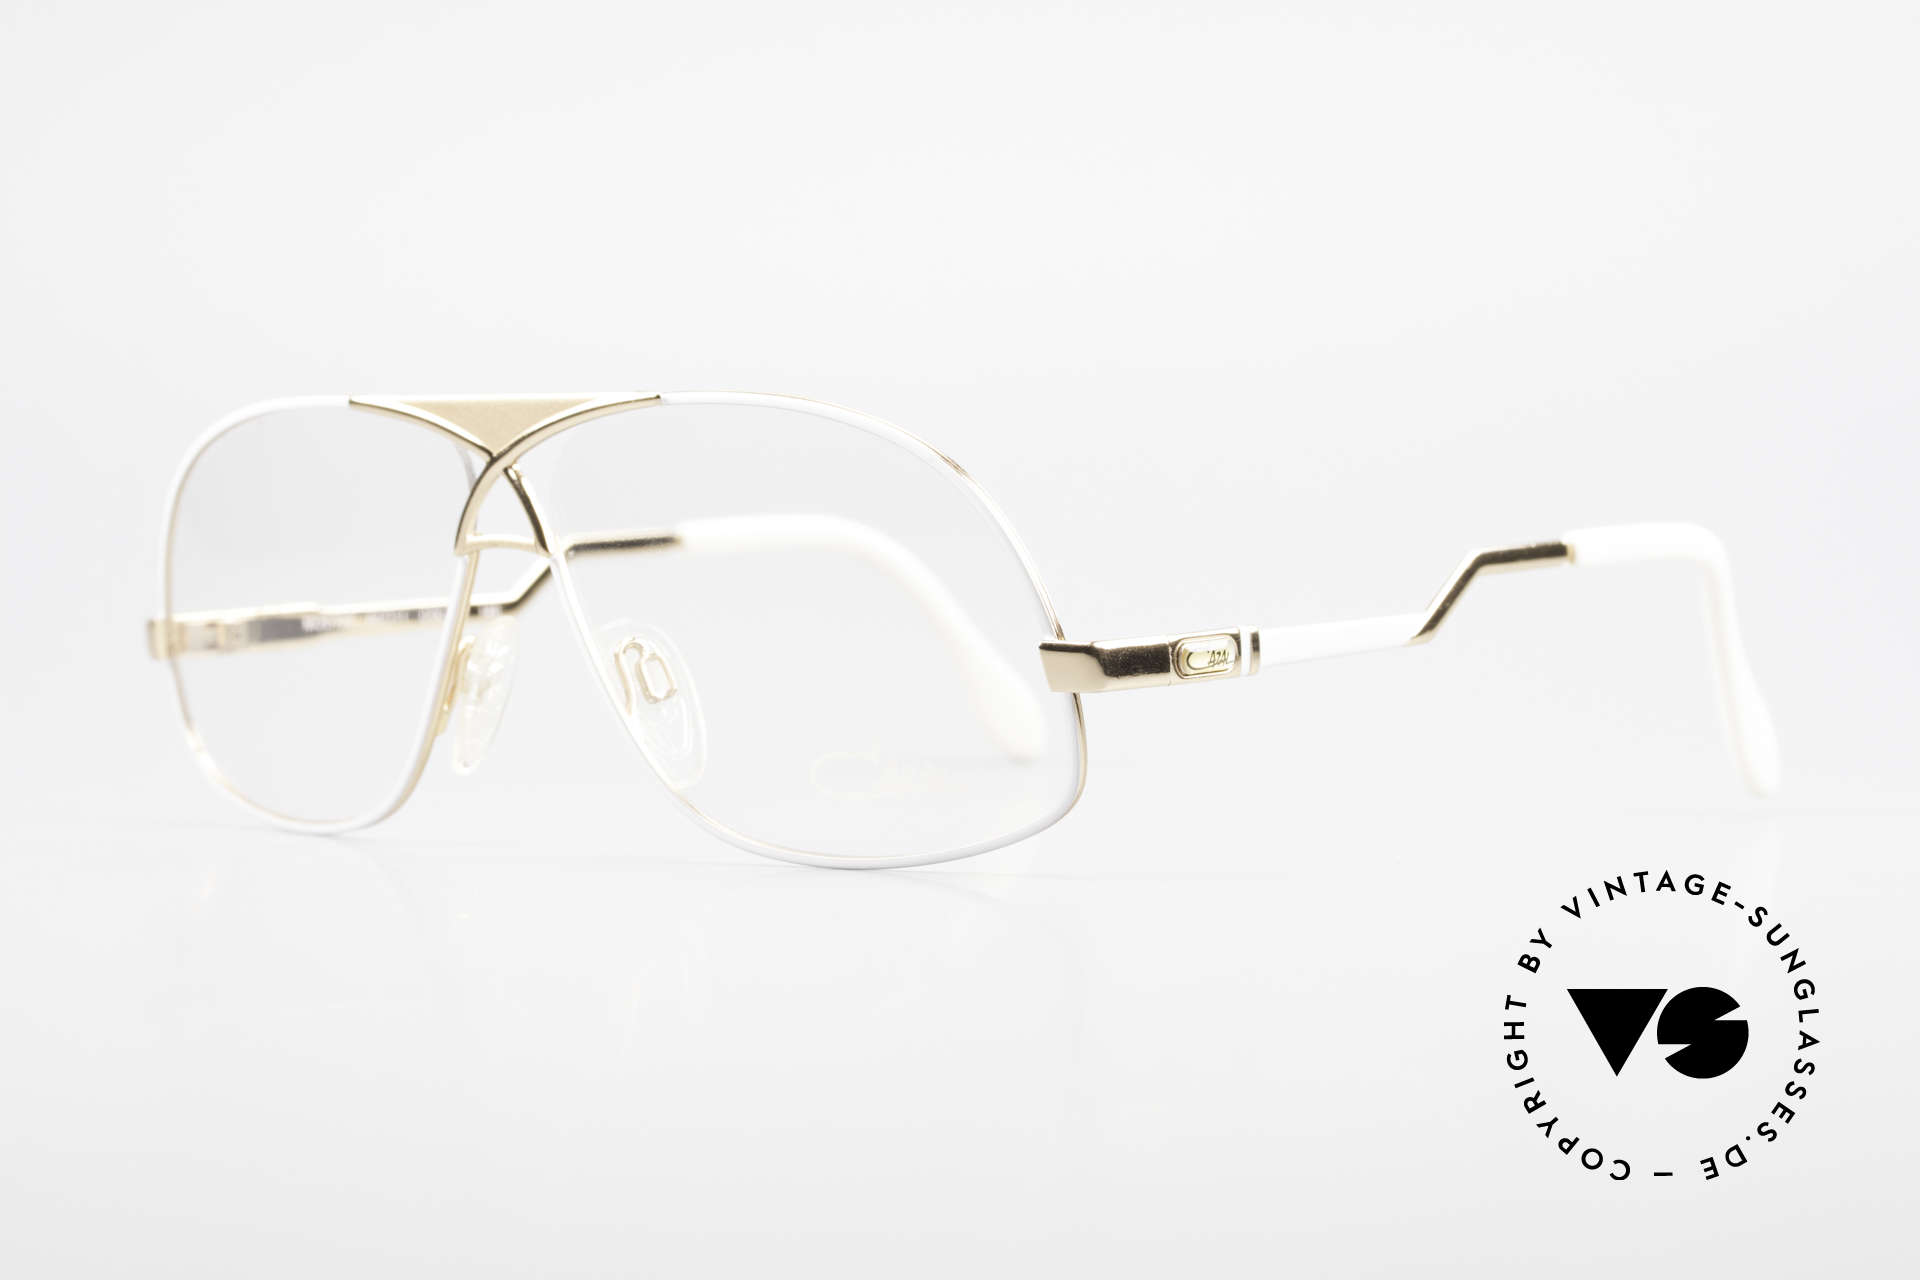 Cazal 737 80's Vintage Men's Eyeglasses, men's designer glasses from 1988 (W.Germany), Made for Men